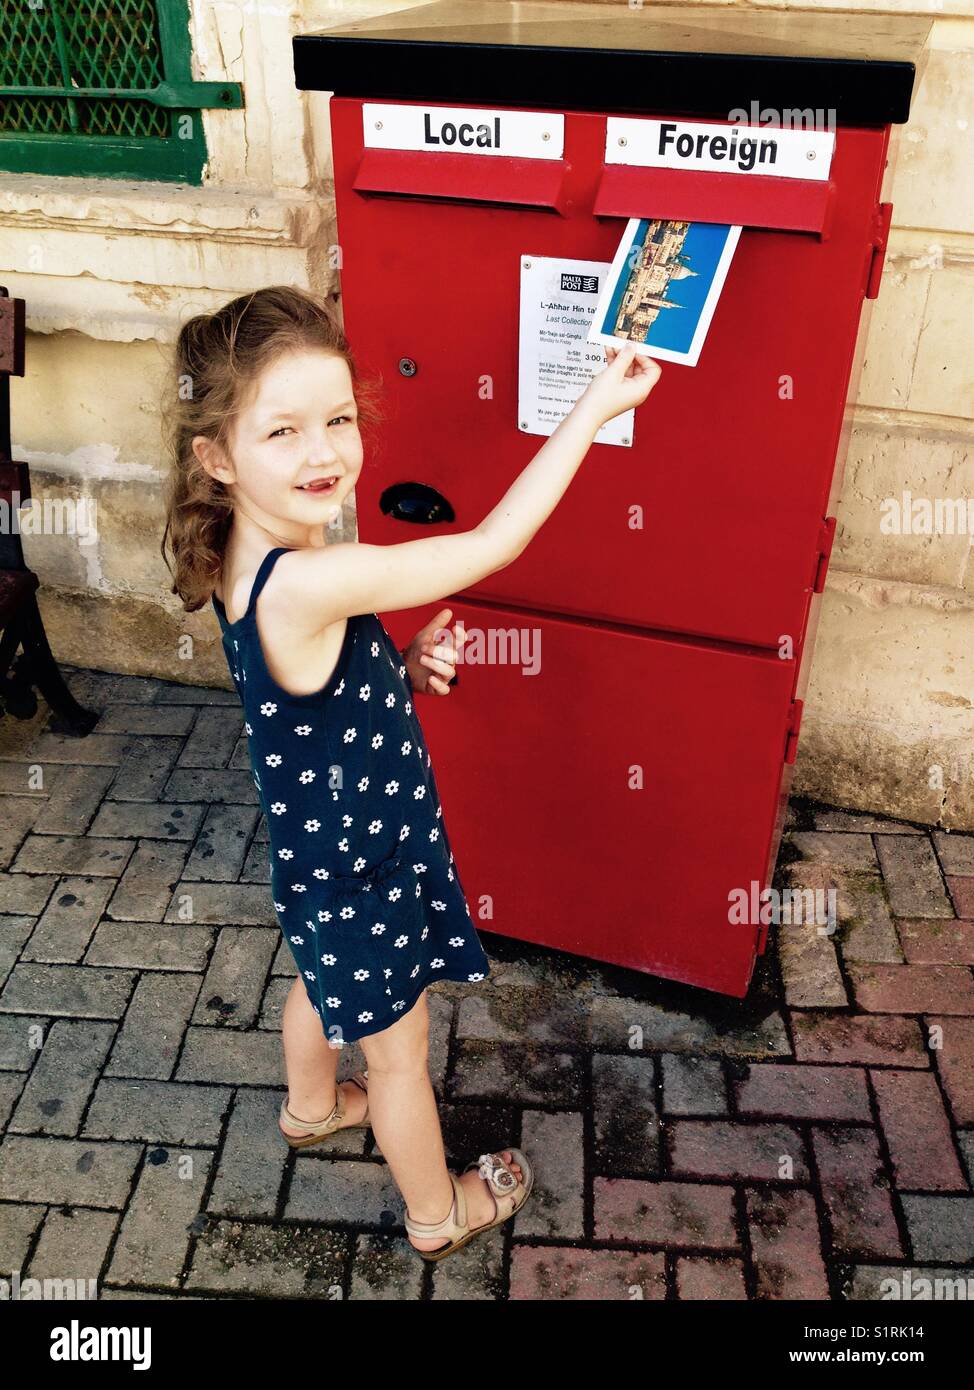 Giovane ragazza / bambino / bambino posti la sua cartolina in una buca delle lettere / red letter box / Casella di posta elettronica attraverso lo slot contrassegnato posta estera. Malta. Foto Stock